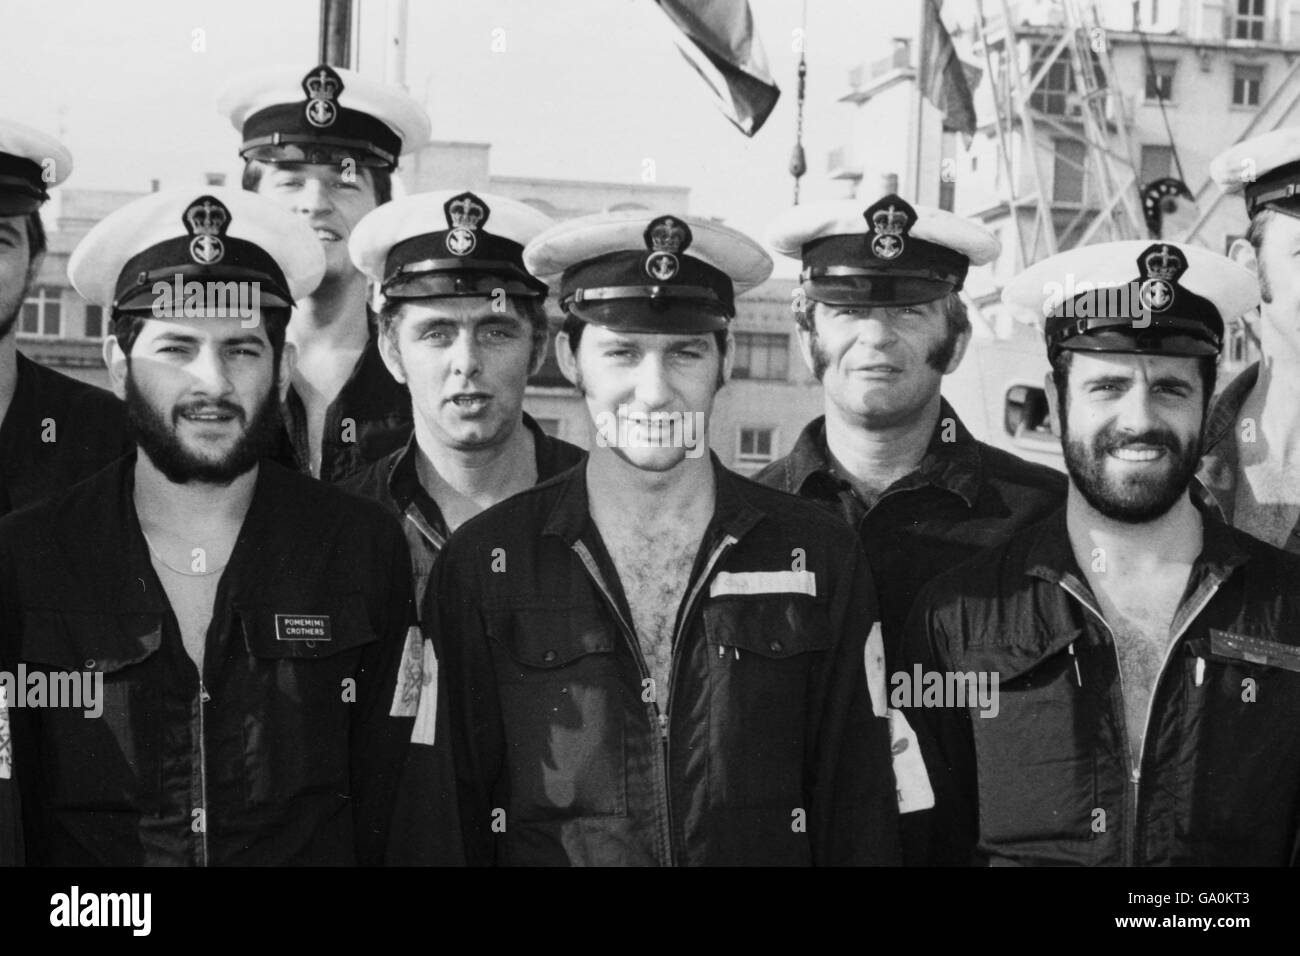 Sammeln Sie das Bild des ehemaligen Ingenieurs der Royal Navy Derek 'Smokey' Cole (Mitte) an Bord der HMS Intrepid im Jahr 1981. Herr Cole diente an Bord des Sturmschiffs während des Falklandkrieges vor 25 Jahren. Stockfoto